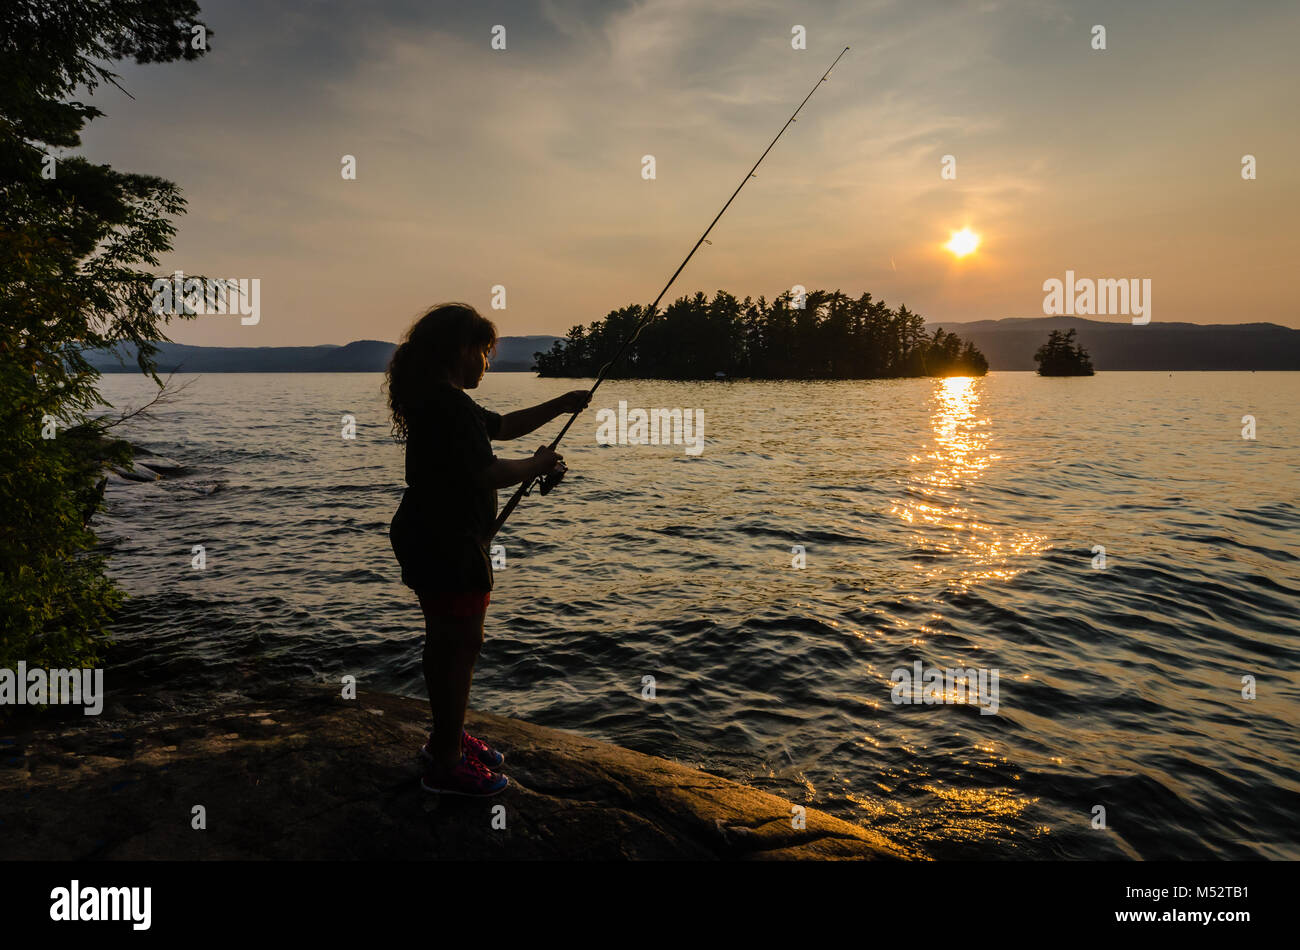 Giovane ragazza ispanica pesci su una roccia a Lake George in New York vicino a Montagne Adirondack, come il sole al tramonto proietta un bagliore dorato oltre il suo volto. Foto Stock